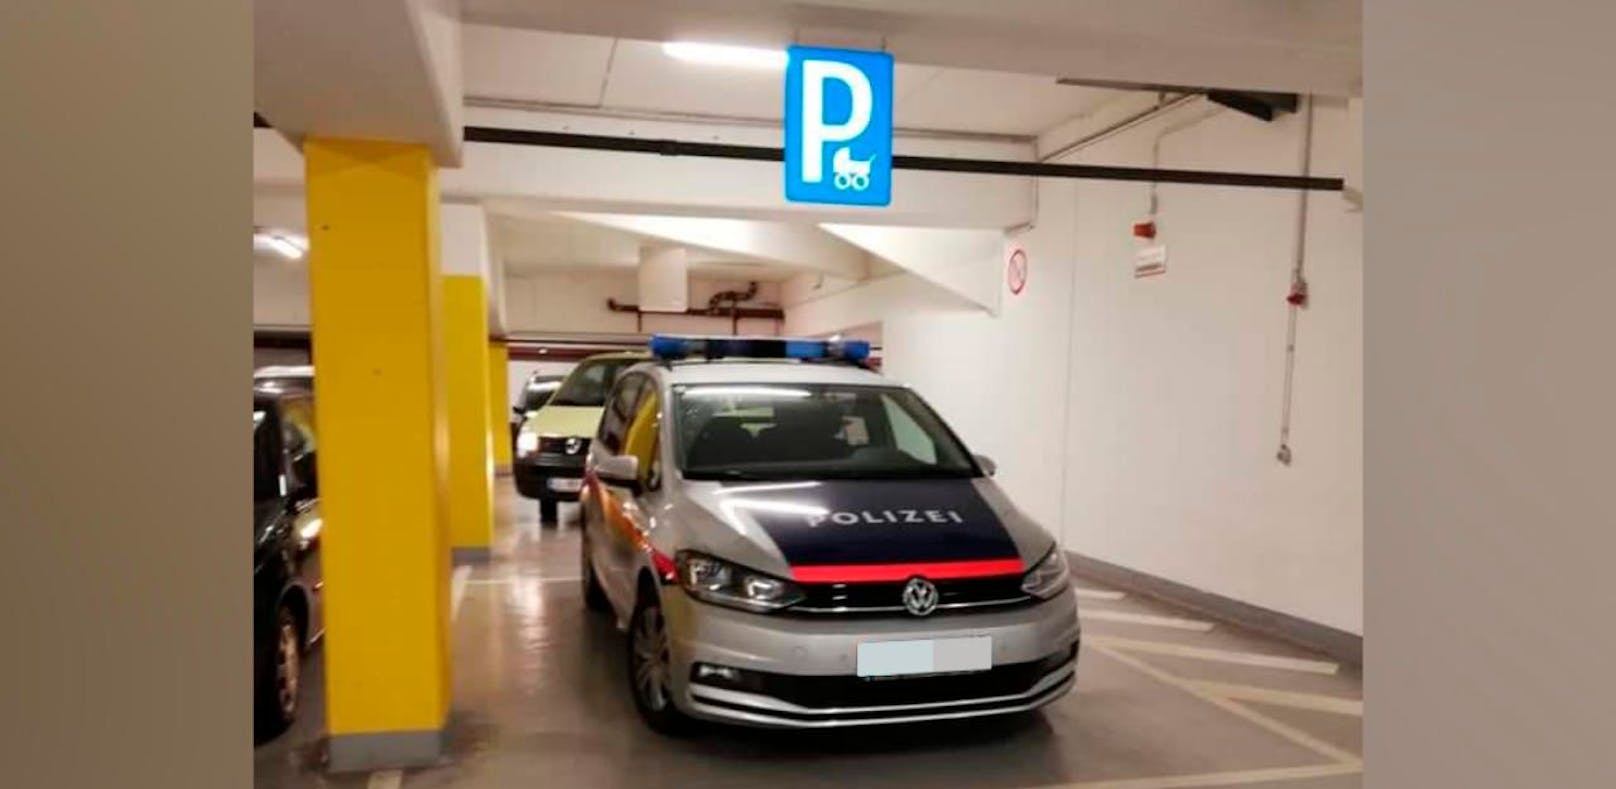 Das Polizeiauto parkt auf einem Kinderwagen-Parkplatz. 